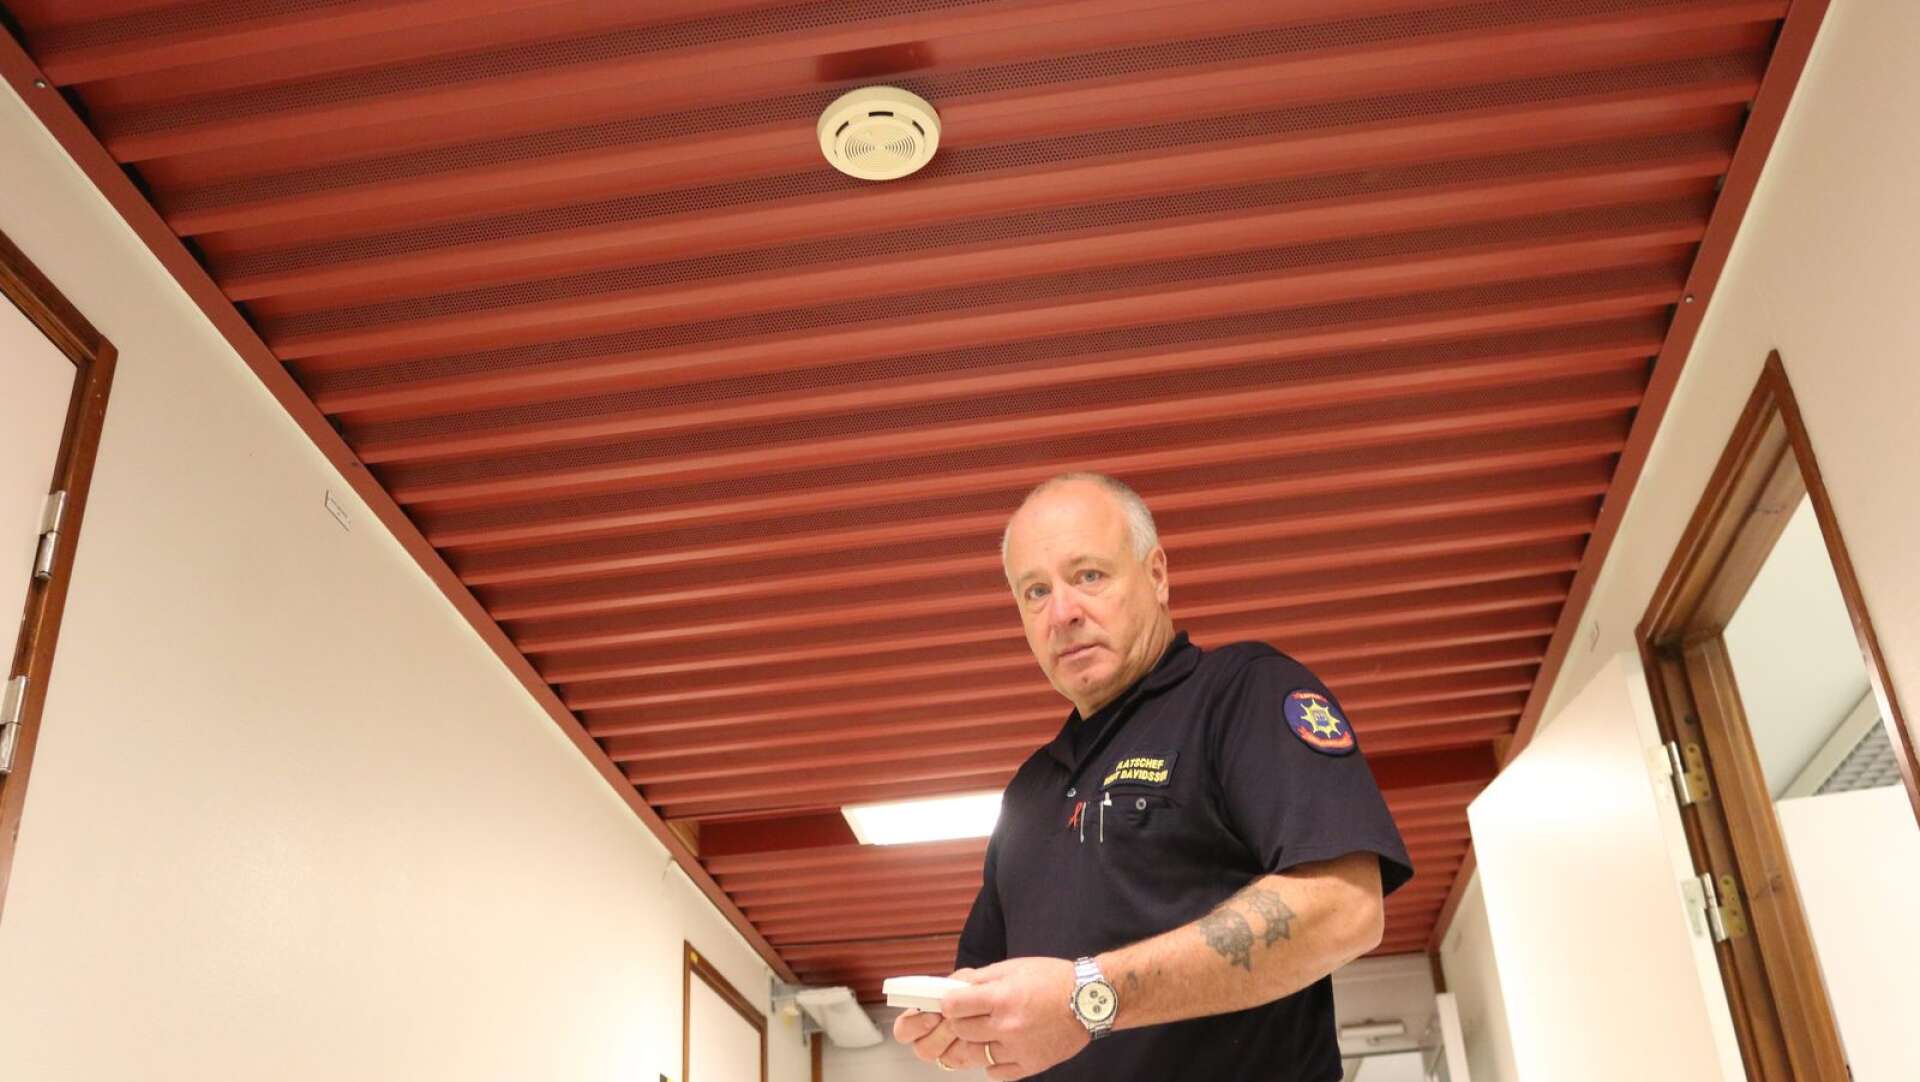 En fungerande brandvarnare är det viktigaste att ha hemma, menar Kent Davidsson som är platschef på räddningstjänst.